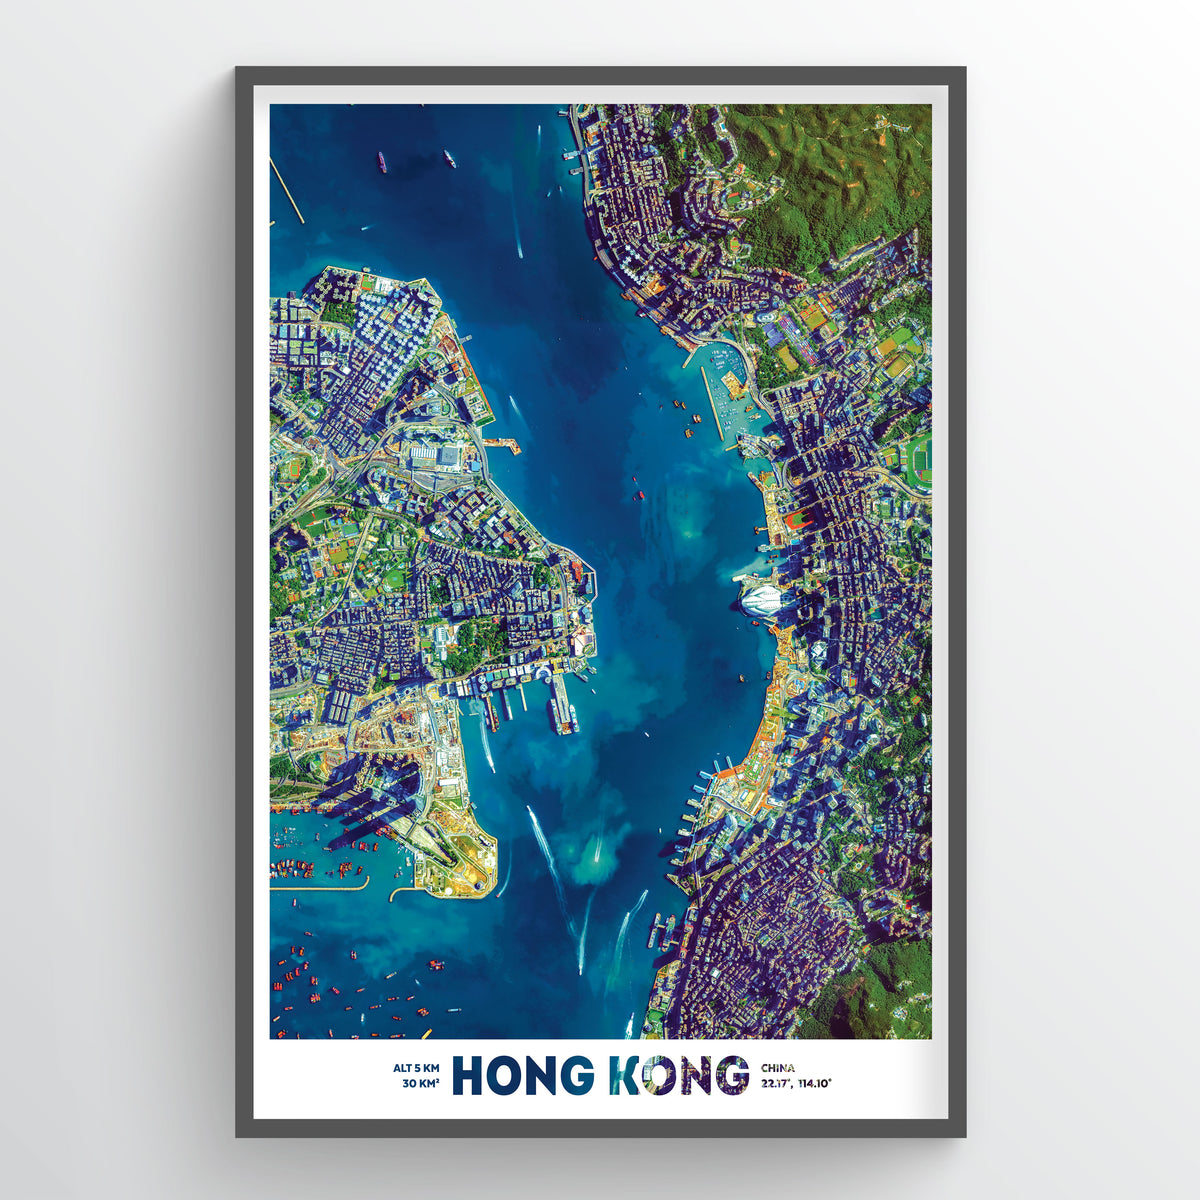 Hong Kong Earth Photography - Art Print